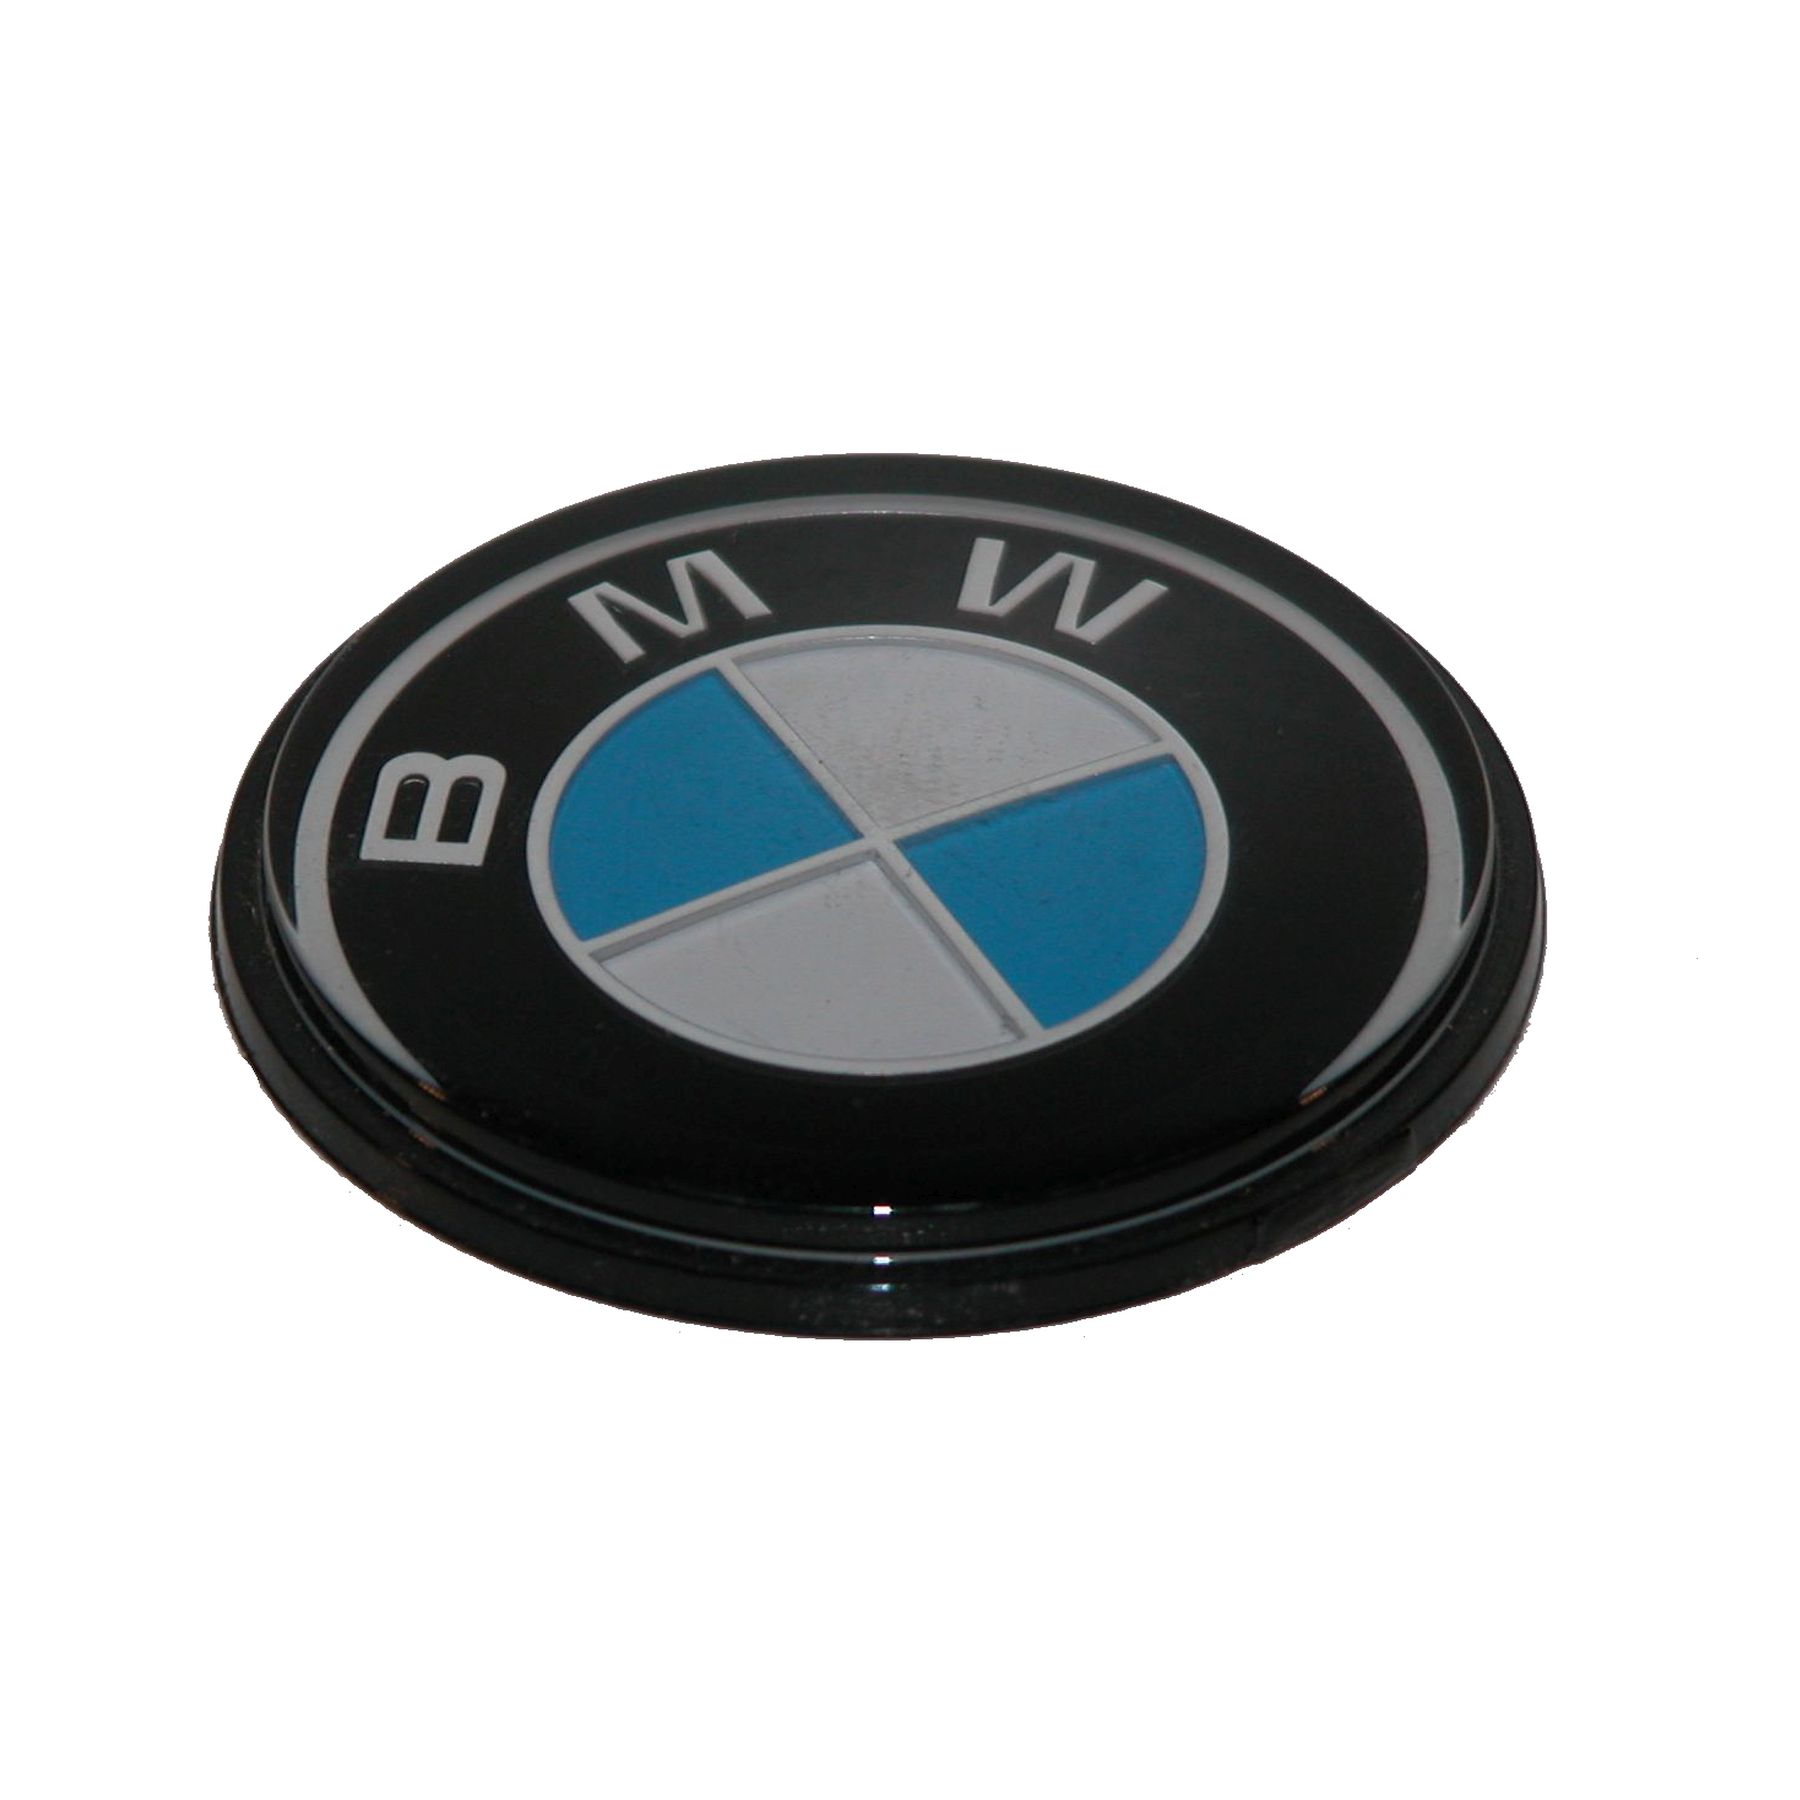 Emblem BMW Motorrad für Koffer , Verkleidung und Zubehör 41mm